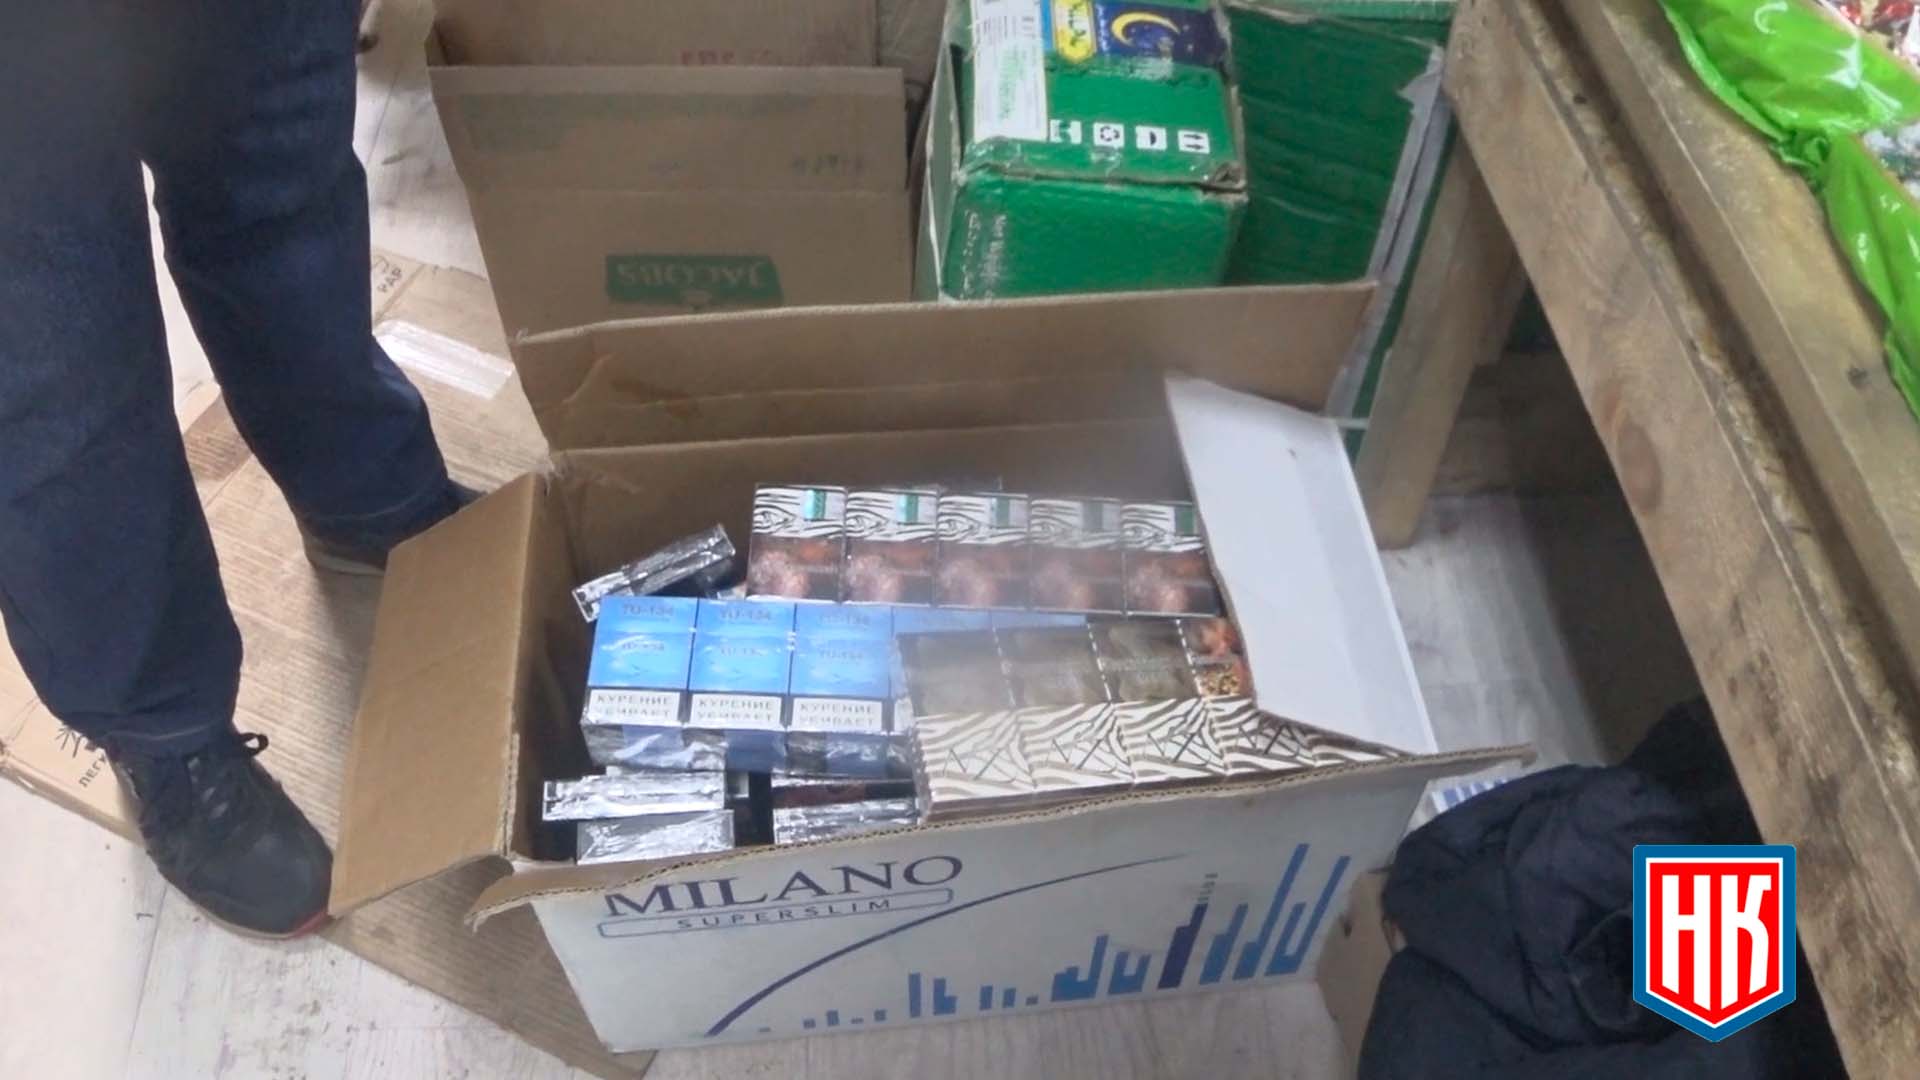 Продажа контрафактных сигарет в Екатеринбурге – Сюжет “Народного КОНТРОЛЯ”